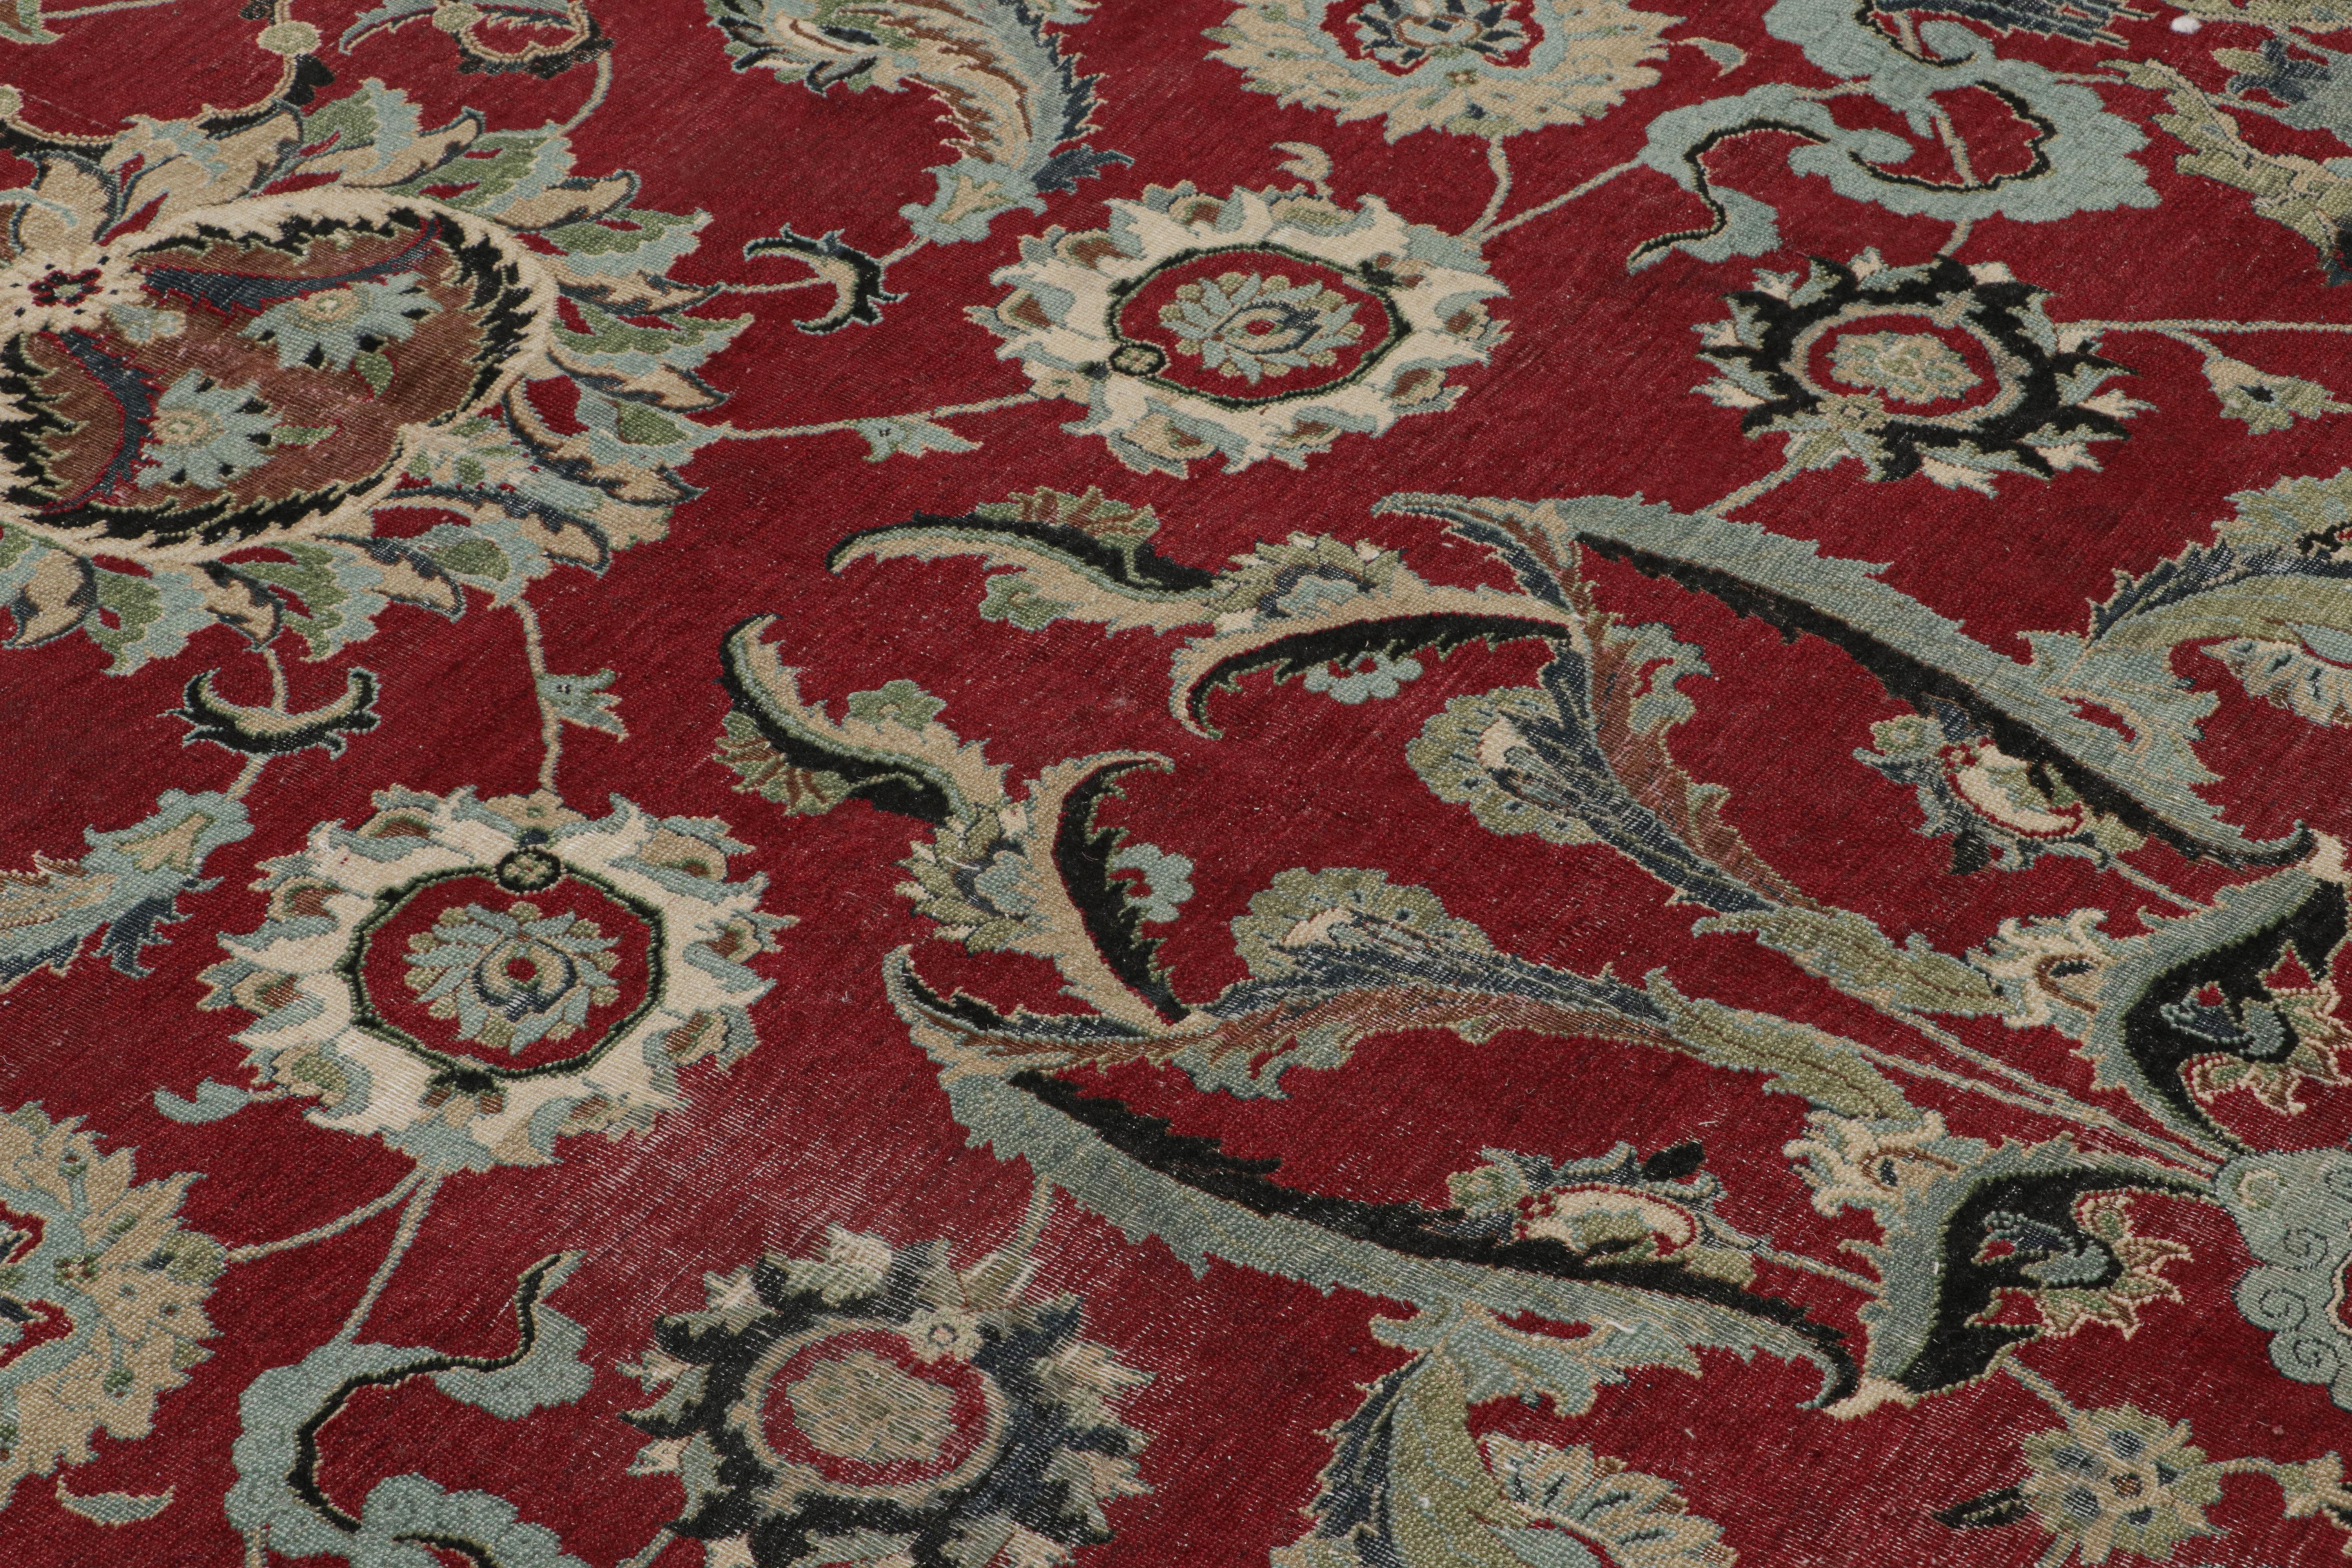 Dieser quadratische Teppich (5x5) aus handgeknüpfter Wolle ist von einem seltenen Isfahan-Design aus dem 17. Jahrhundert inspiriert, das zu den begehrtesten persischen Teppichen seiner Zeit gehört.

Über das Design: 

Kenner werden bewundern, dass